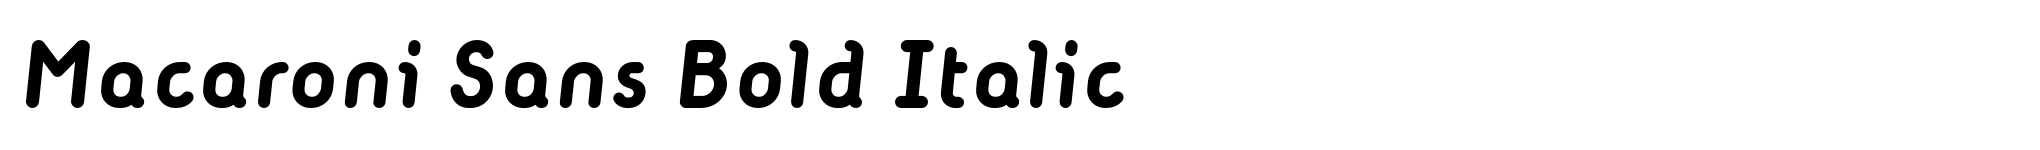 Macaroni Sans Bold Italic image